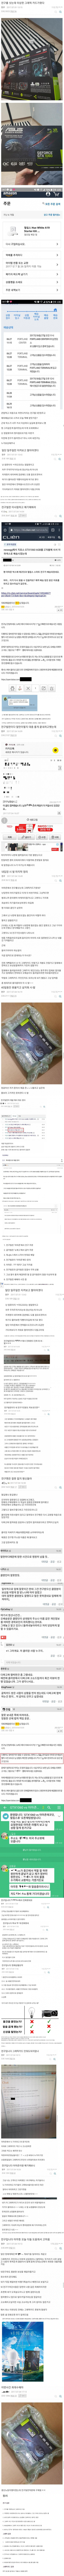 택배 오배송으로 인한 컴갤 전구빌런 vs 클리앙 그래픽빌런.png.jpg